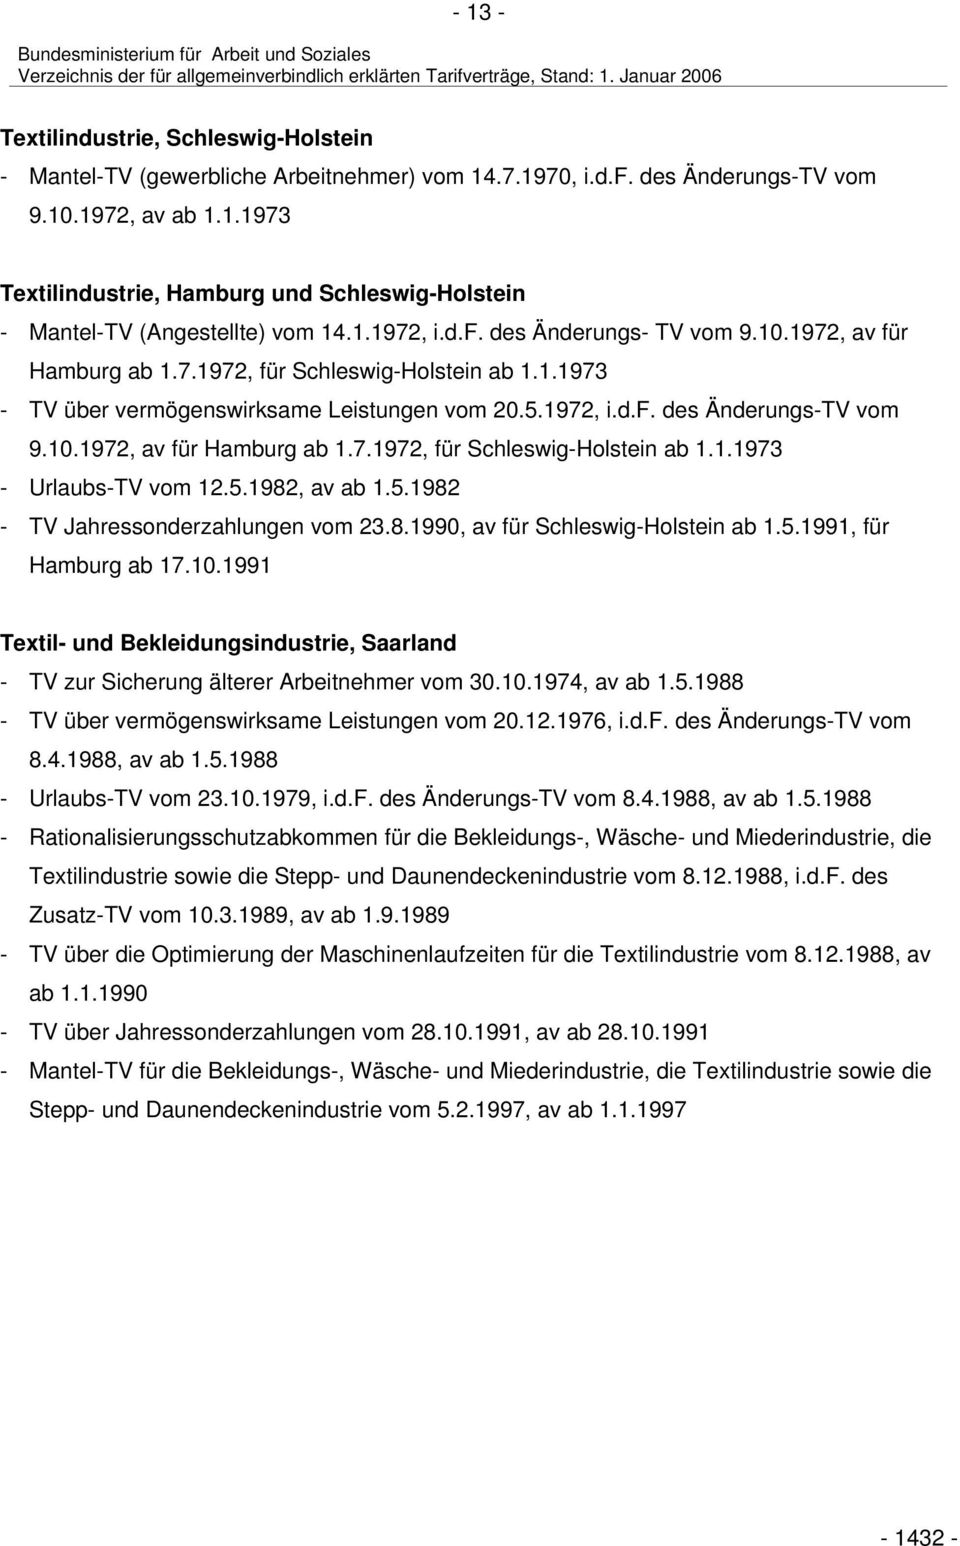 5.1982, av ab 1.5.1982 - TV Jahressonderzahlungen vom 23.8.1990, av für Schleswig-Holstein ab 1.5.1991, für Hamburg ab 17.10.